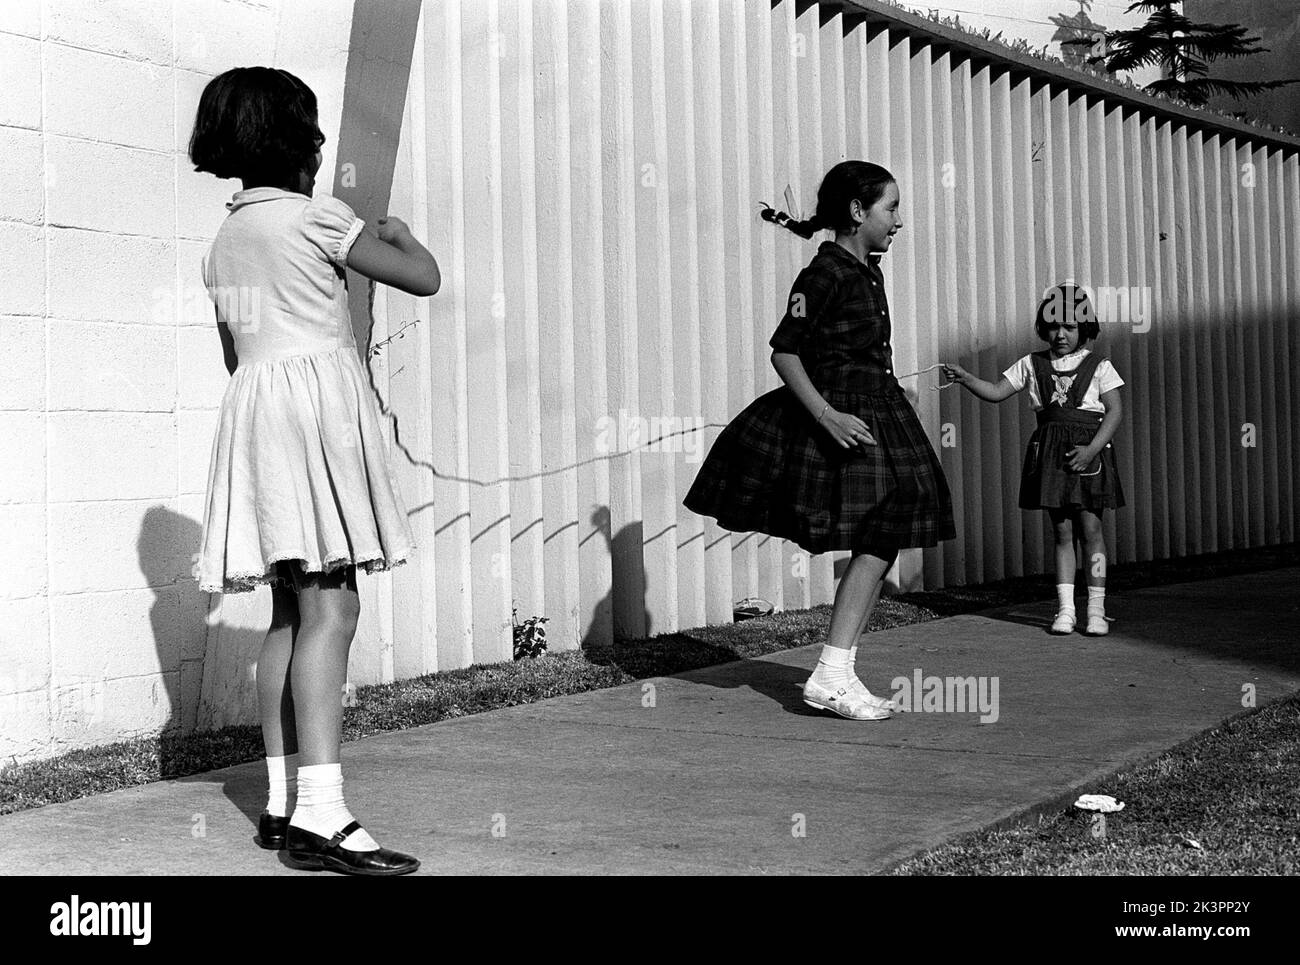 Mexiko im Jahr 1960s. Drei Mädchen spielen auf der Straße, mit einem Springseil - einem Springseil. Ein Mädchen an jedem Ende des Seils schwingt es und ein Mädchen in der Mitte springt darüber. Mexiko 1964. Roland Palm Ref.-Ordner 2 Stockfoto